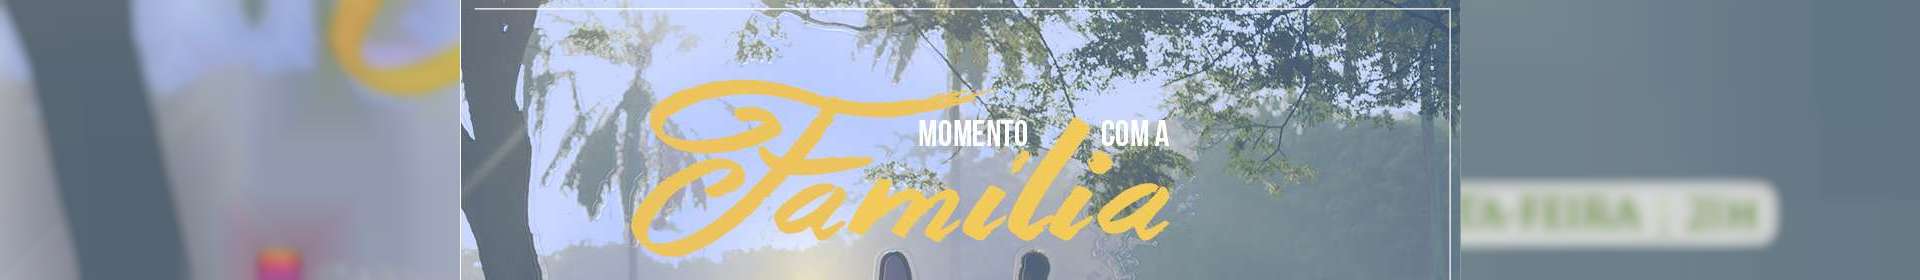 Momento com a Família - 13/09/2019